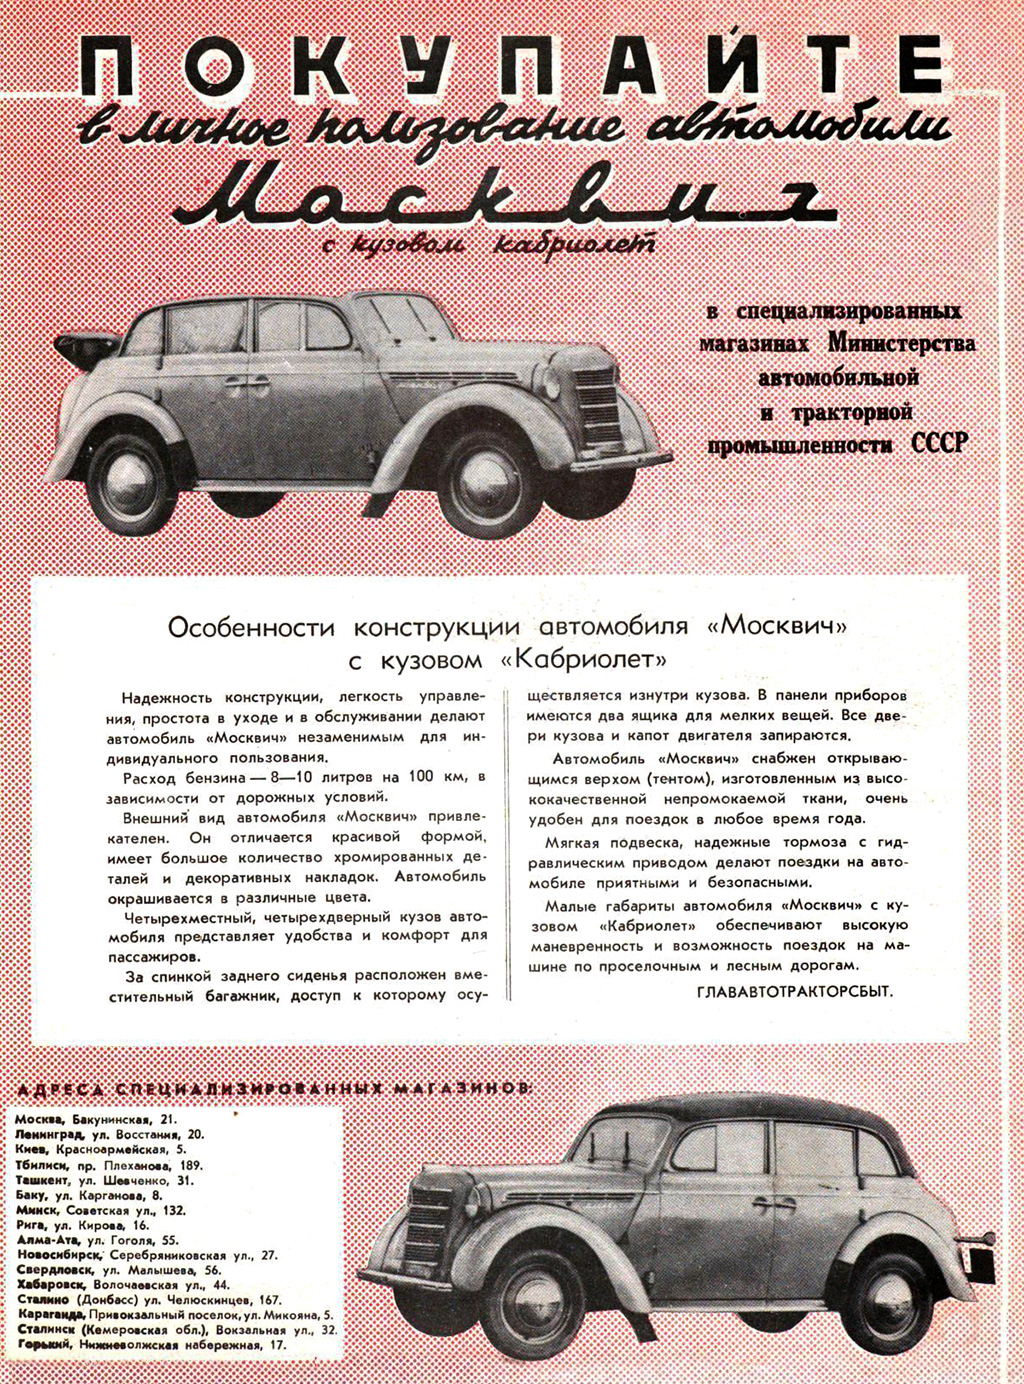 Абсурдный указ: зачем в СССР выпускали кабриолеты, которые были никому не нужны